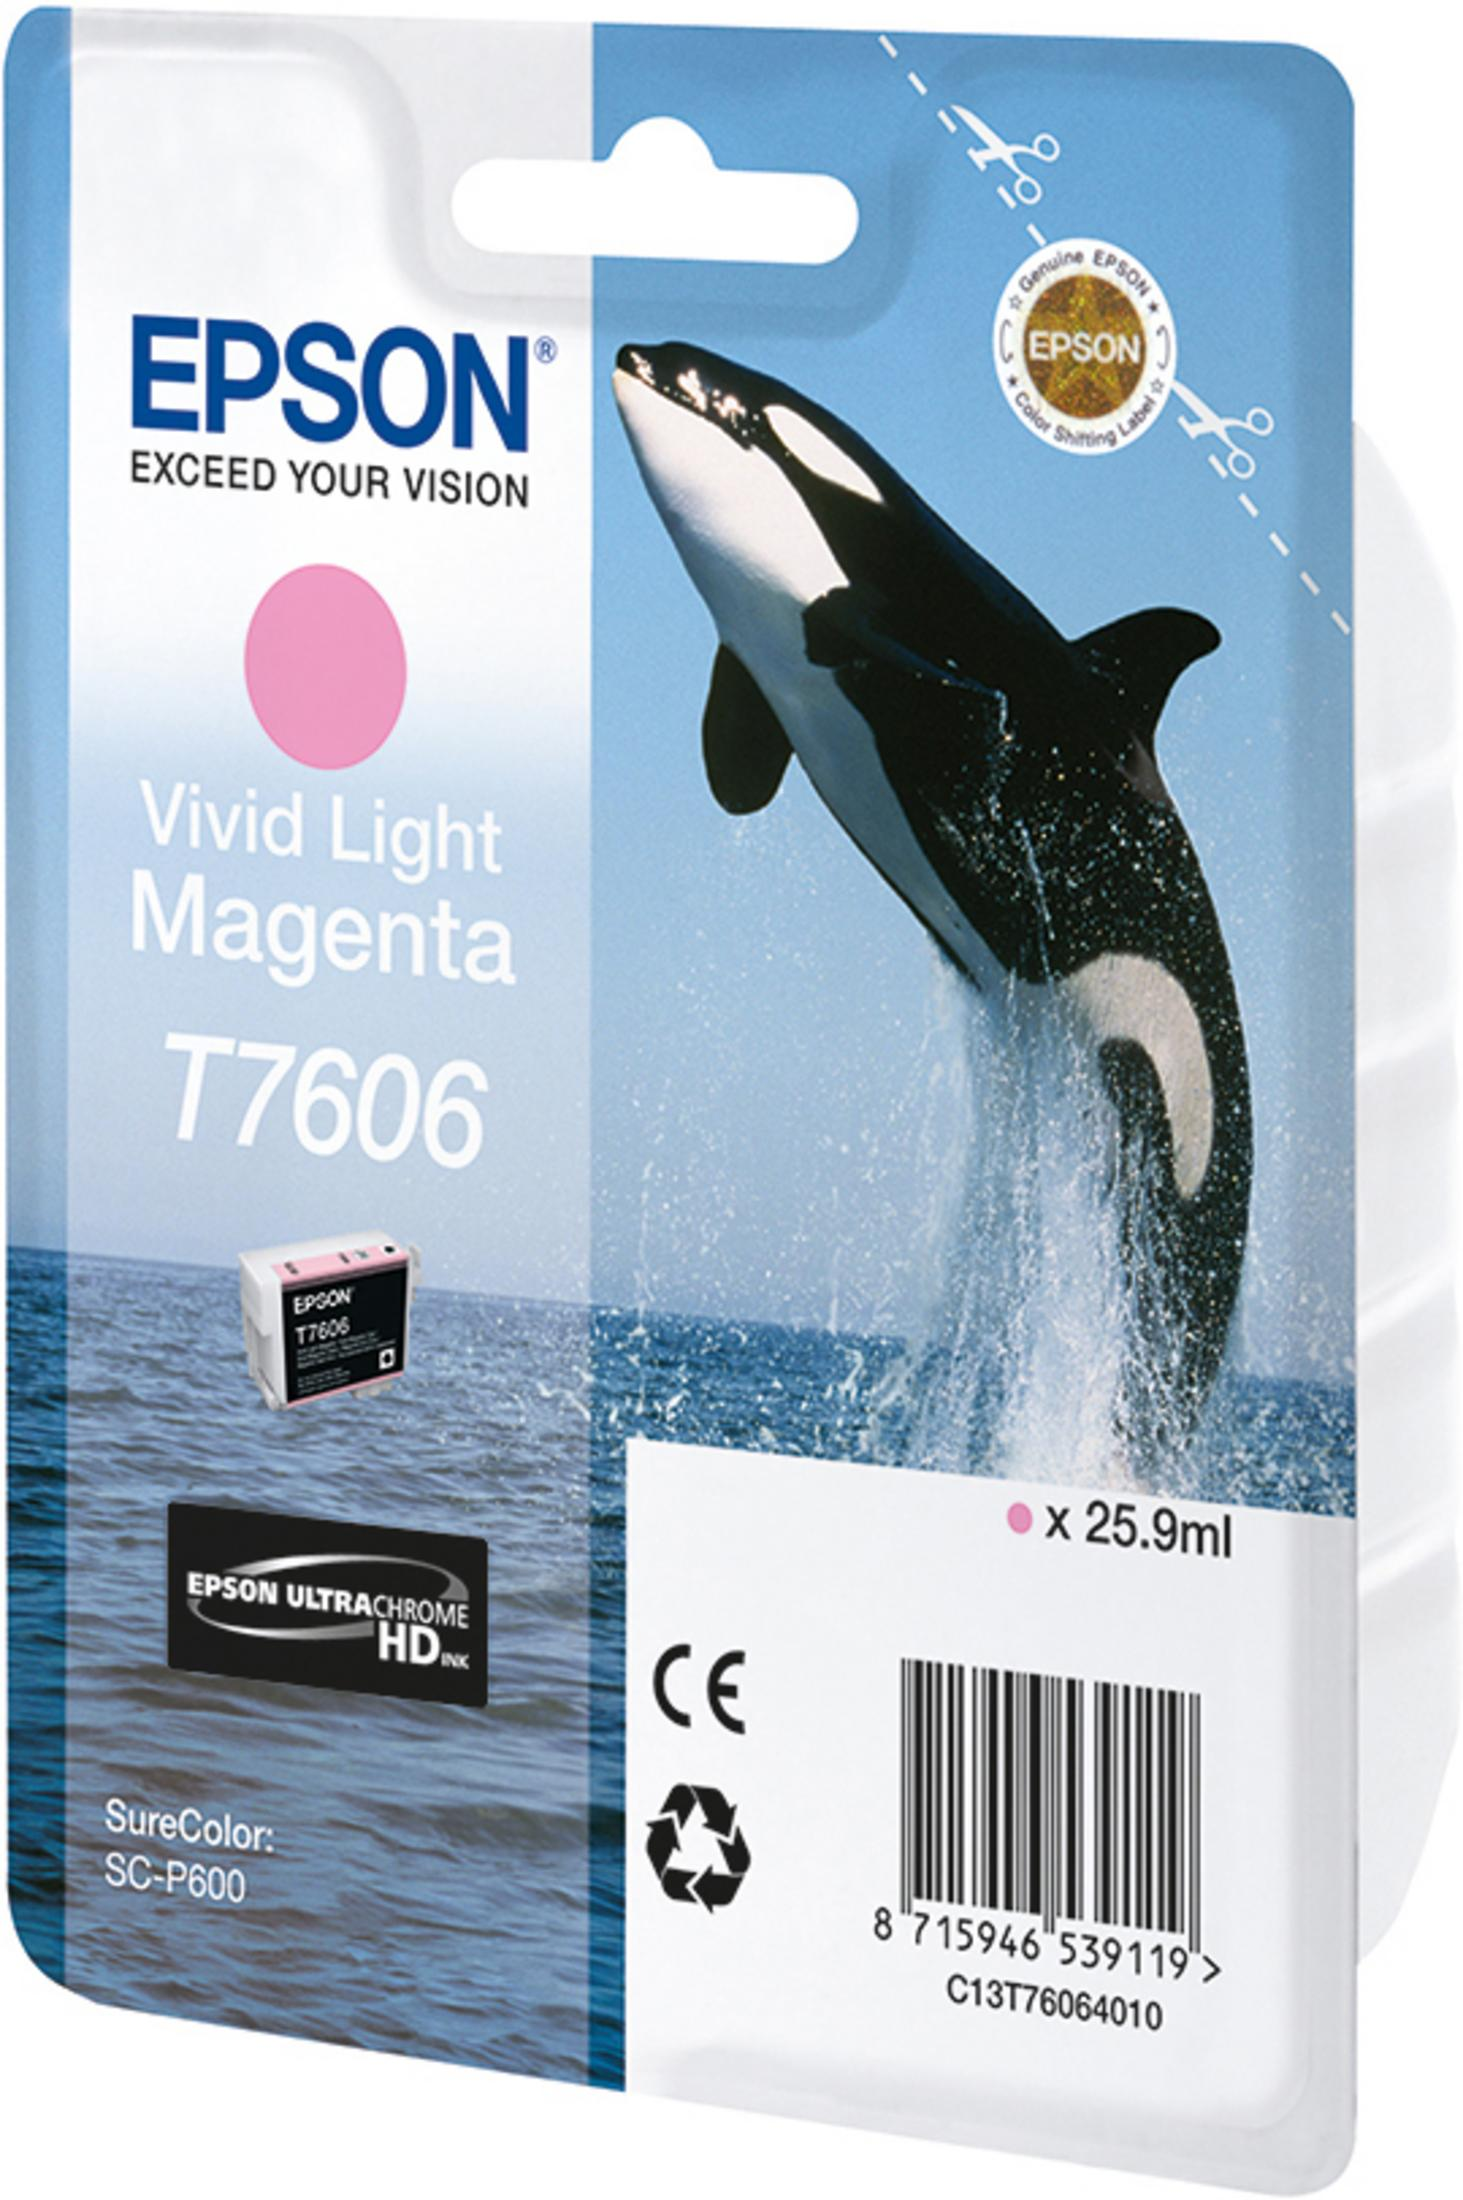 EPSON T7606 Tinte (C13T76064010) photo magenta